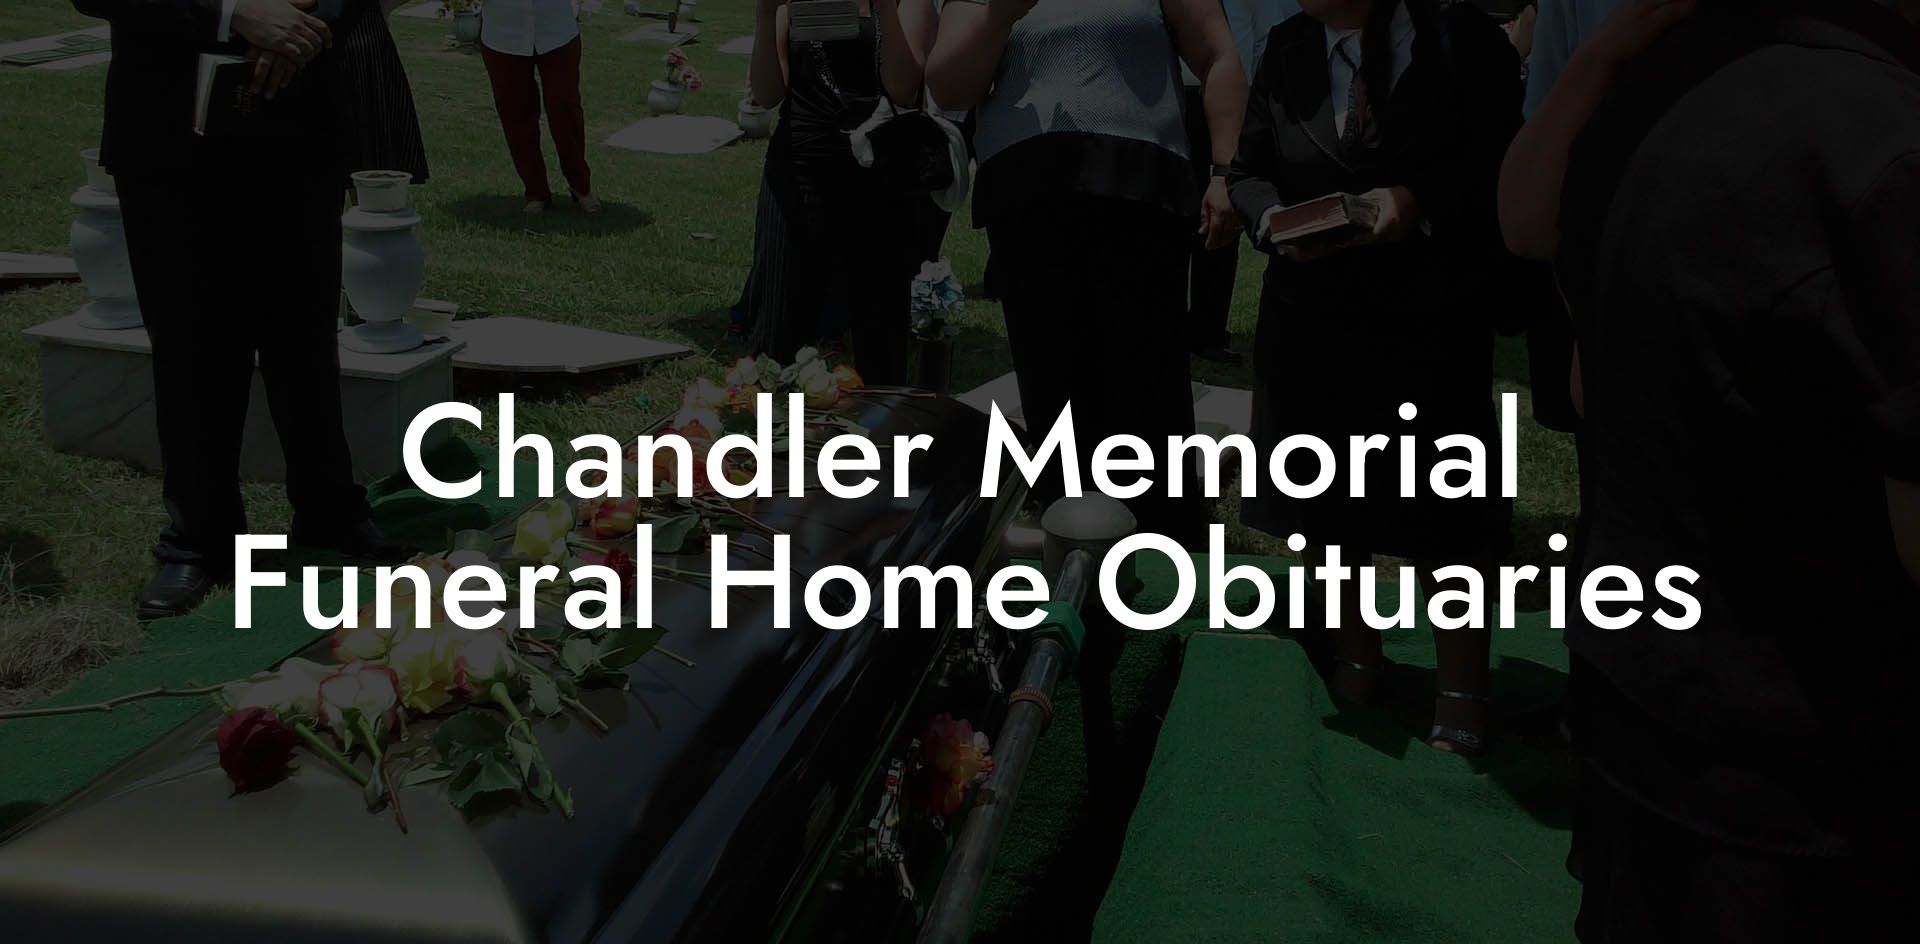 Chandler Memorial Funeral Home Obituaries